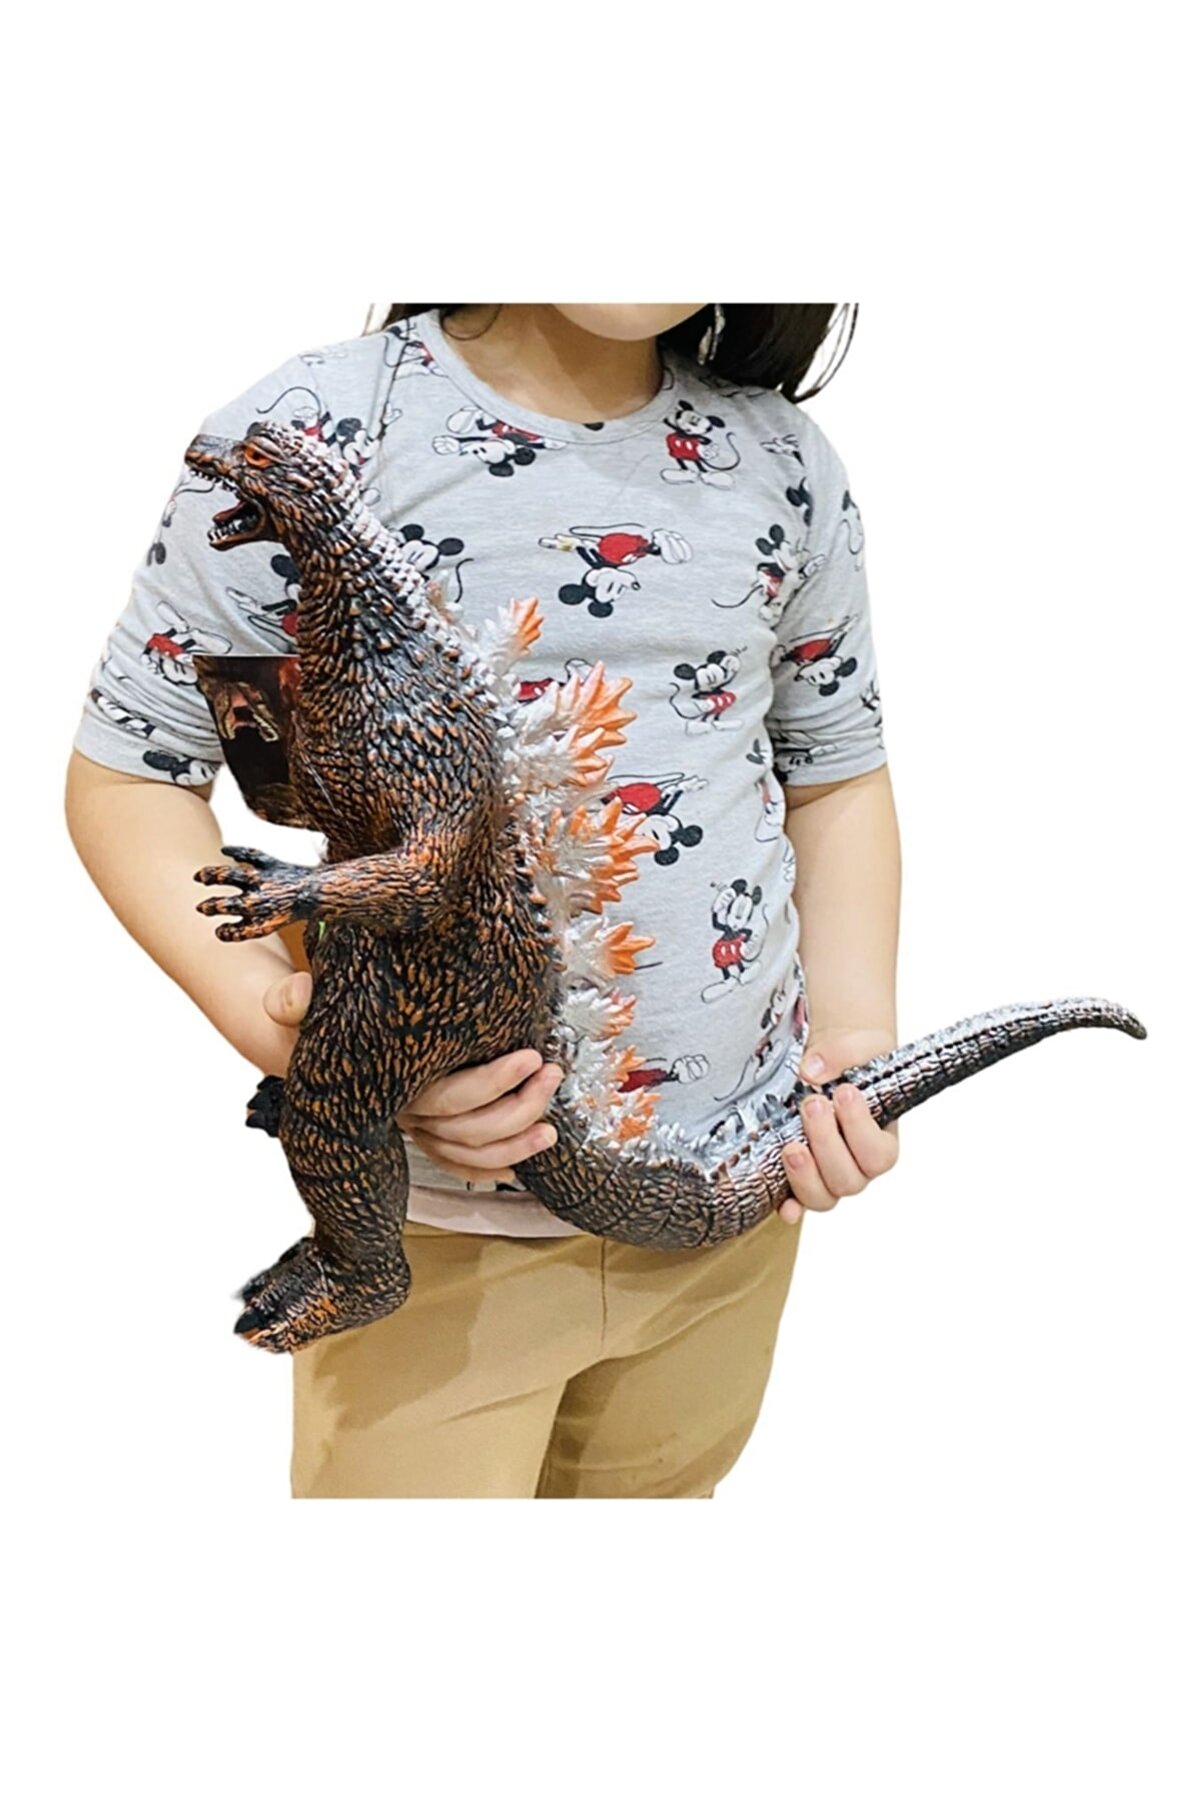 toysandmore Godzilla Büyük Boy Hayvan 43x32 Cm 2 Farklı Gerçekci Sesli Soft Yumuşak Oyuncak